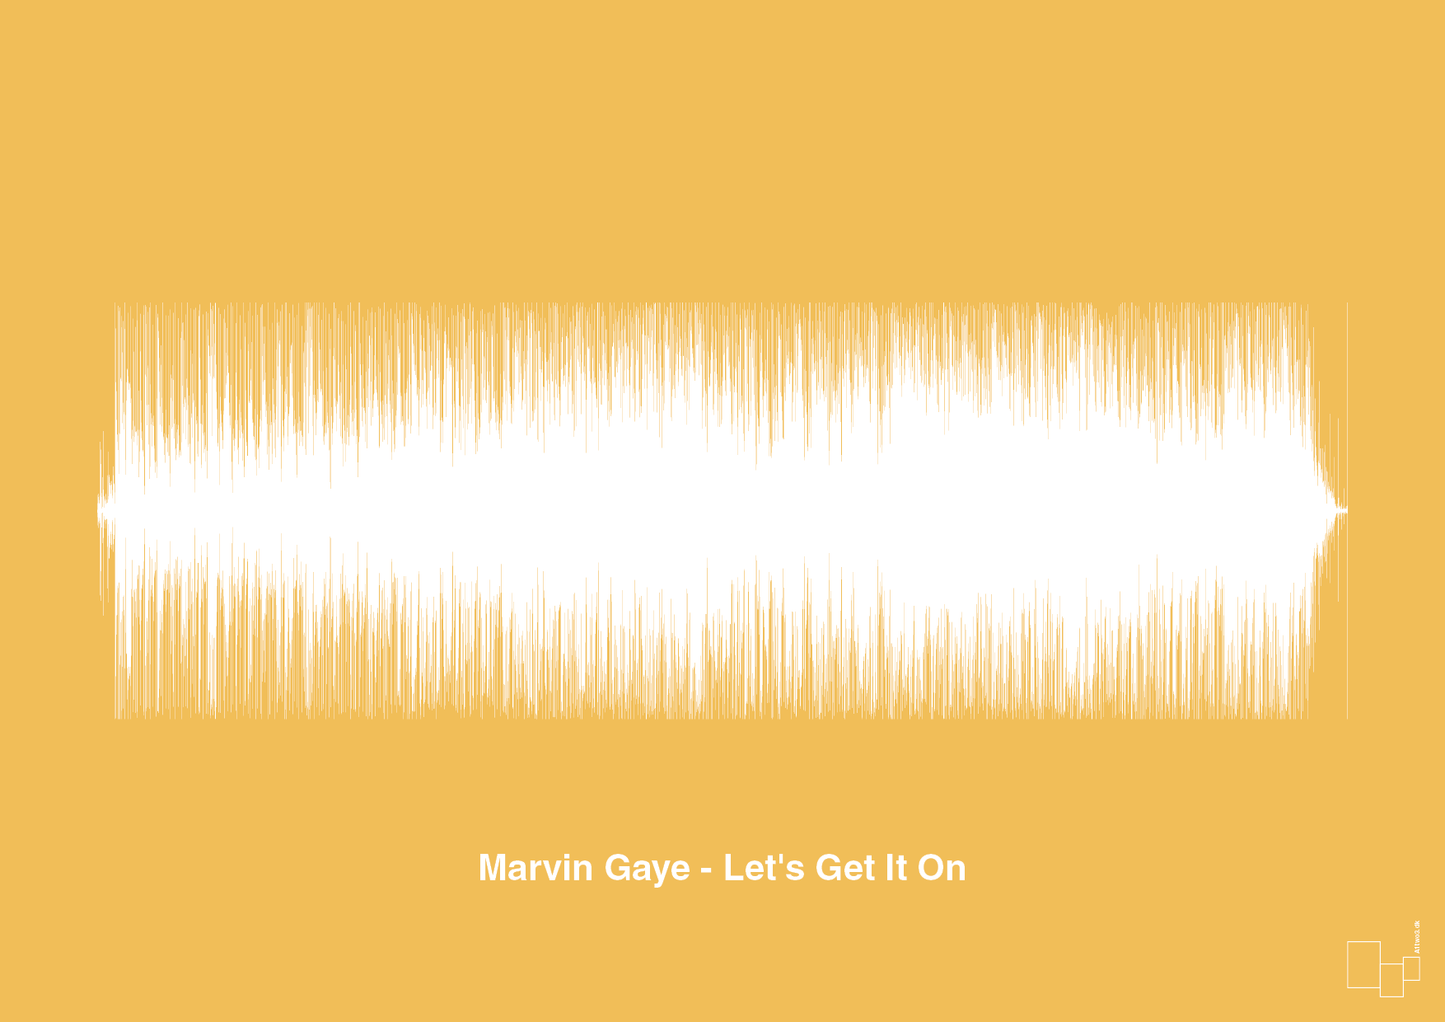 marvin gaye - let's get it on - Plakat med Musik i Honeycomb